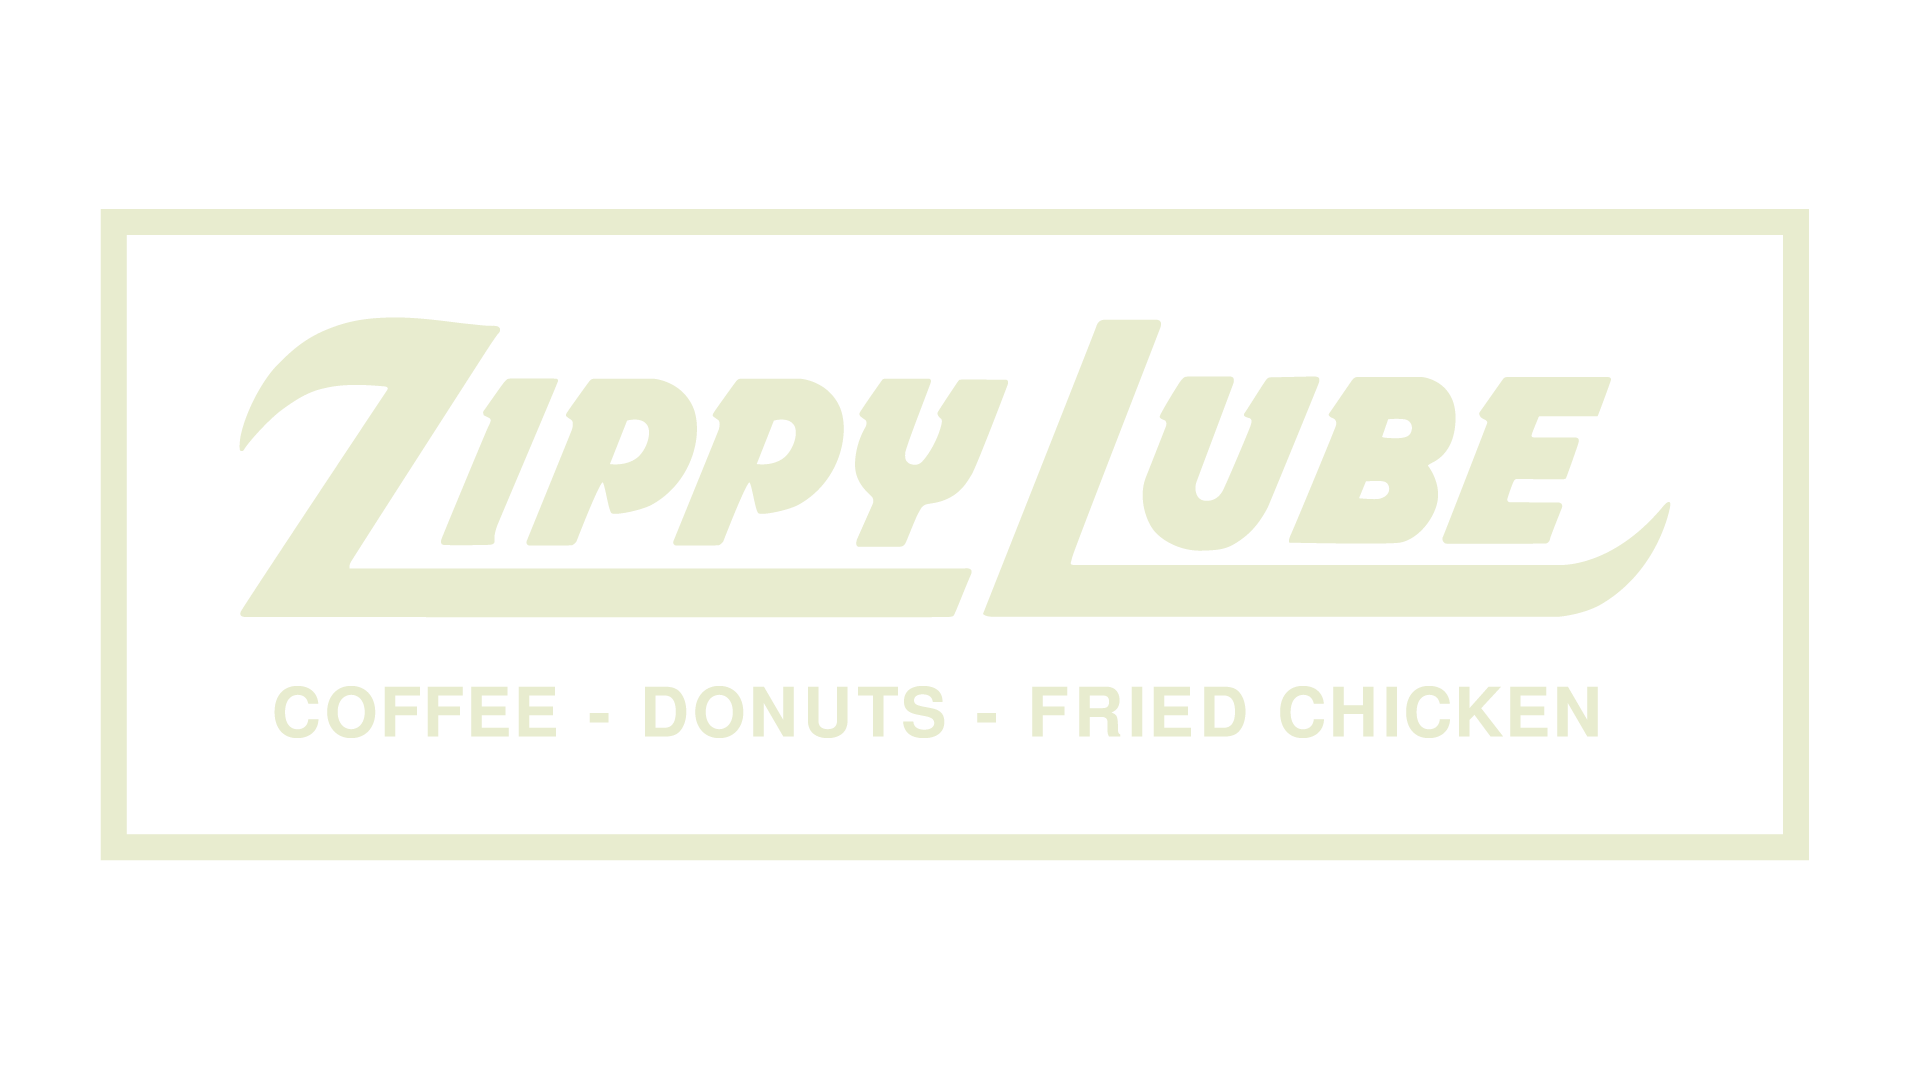 Zippy Lube 